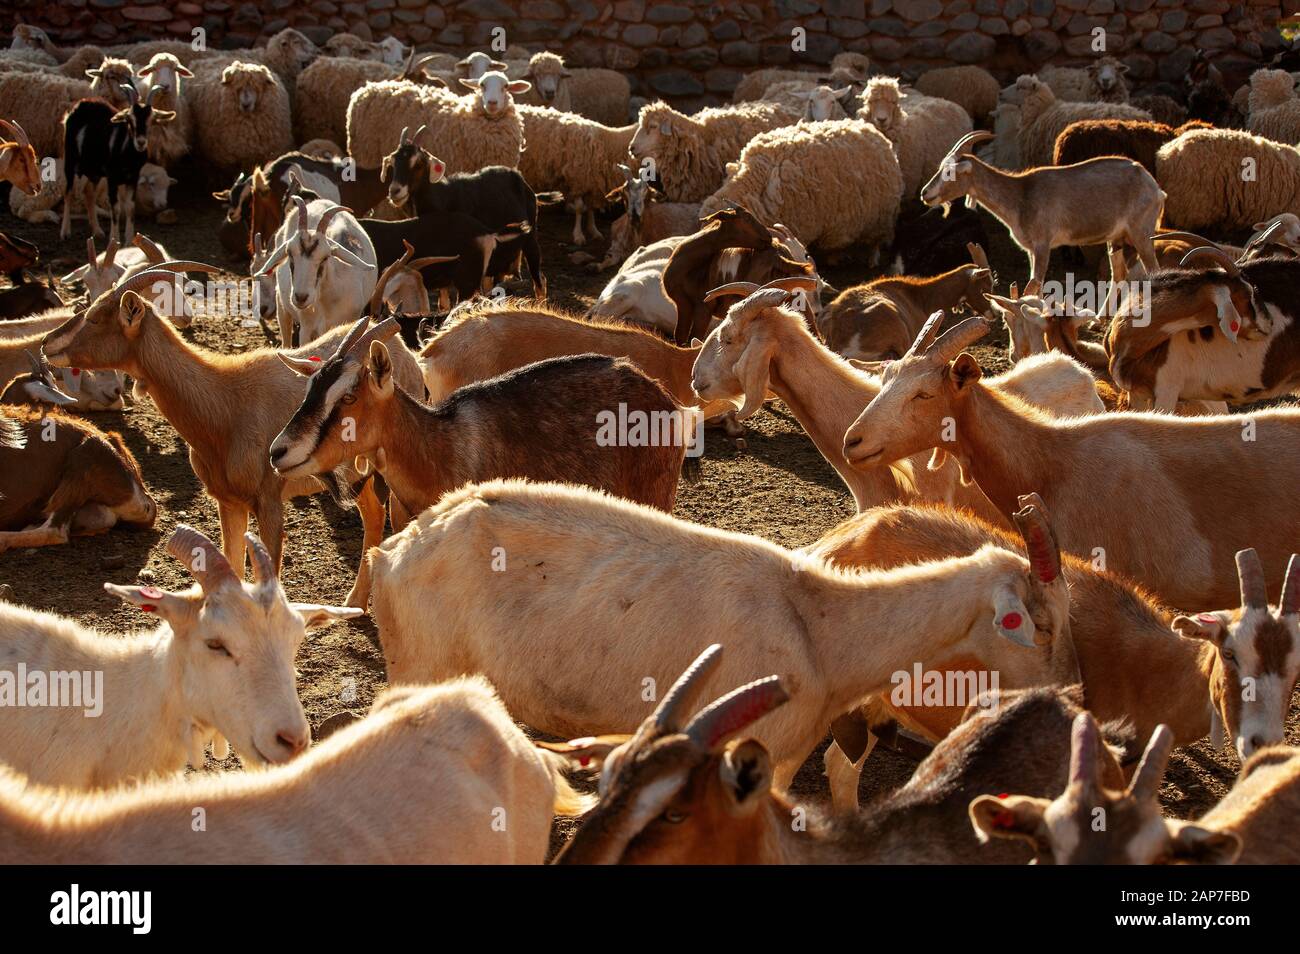 La chèvre se troupeau sur un corral près de Ruta 40, la Puna, Argentine Banque D'Images